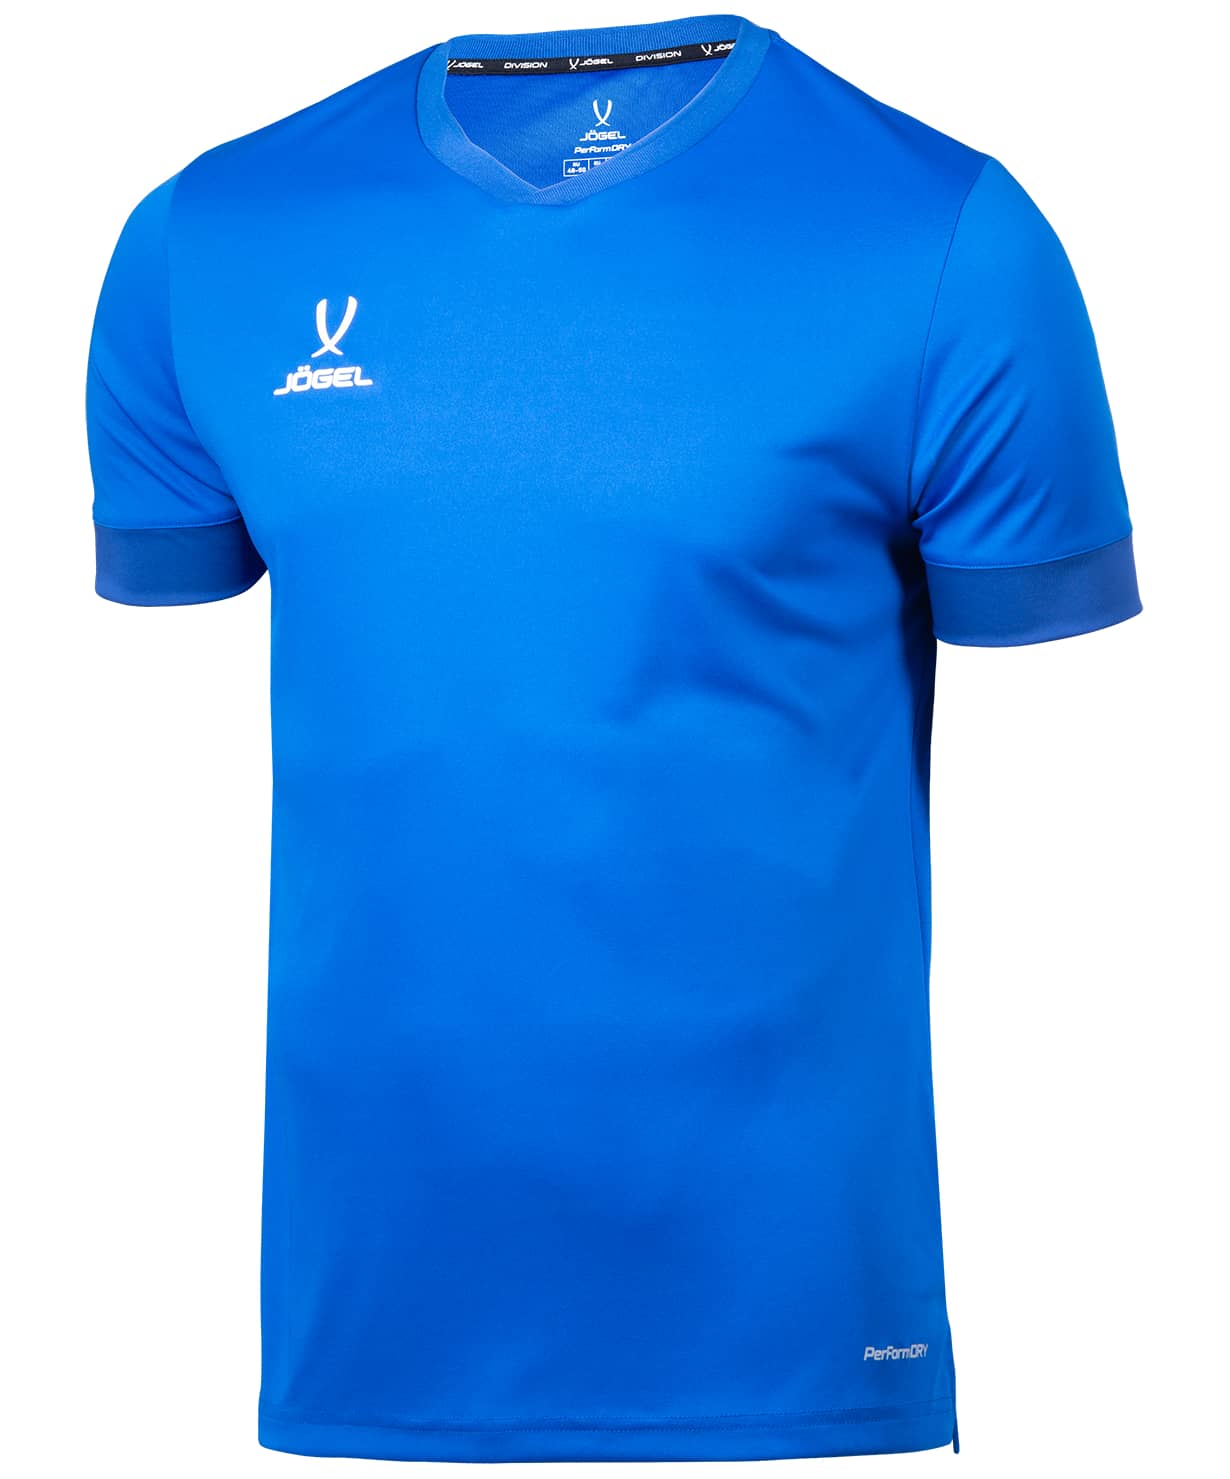 фото Футболка игровая division performdry union jersey, синий/темно-синий/белый, детская xs jogel